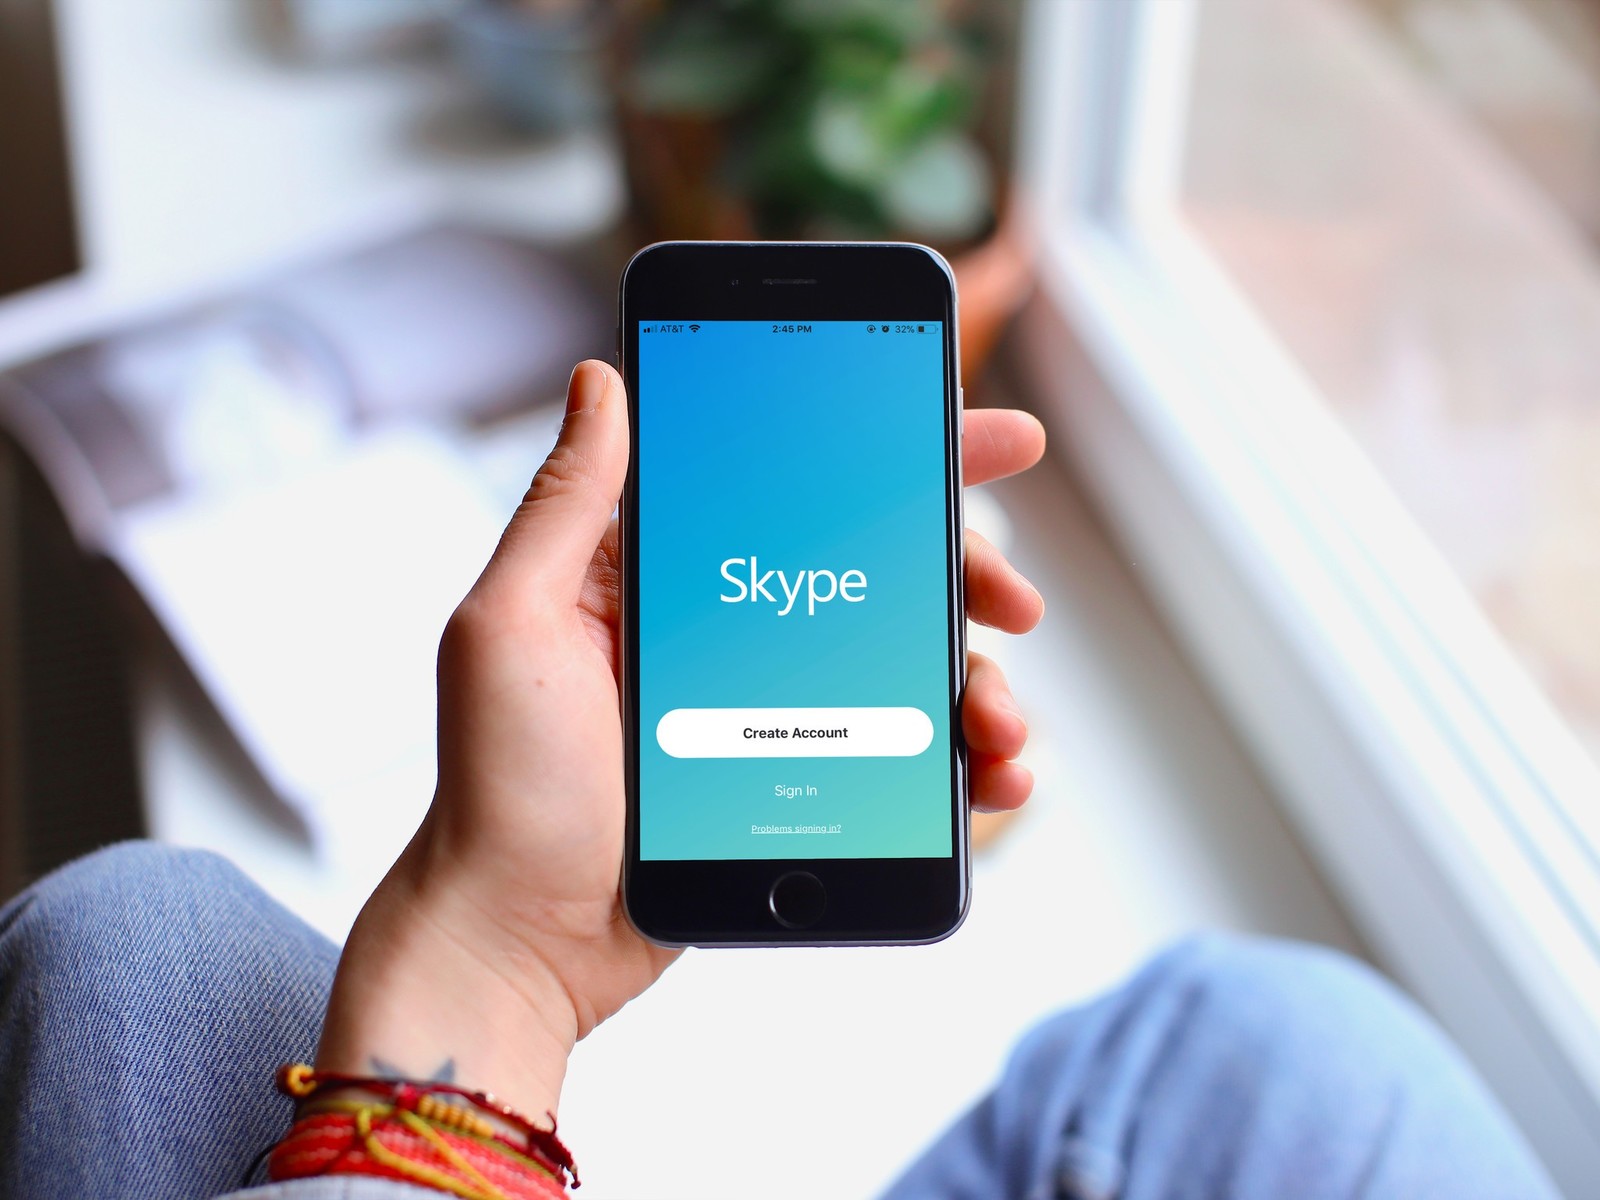 skype-rakiplerine-gozdagi-veren-guncellemeler.jpg